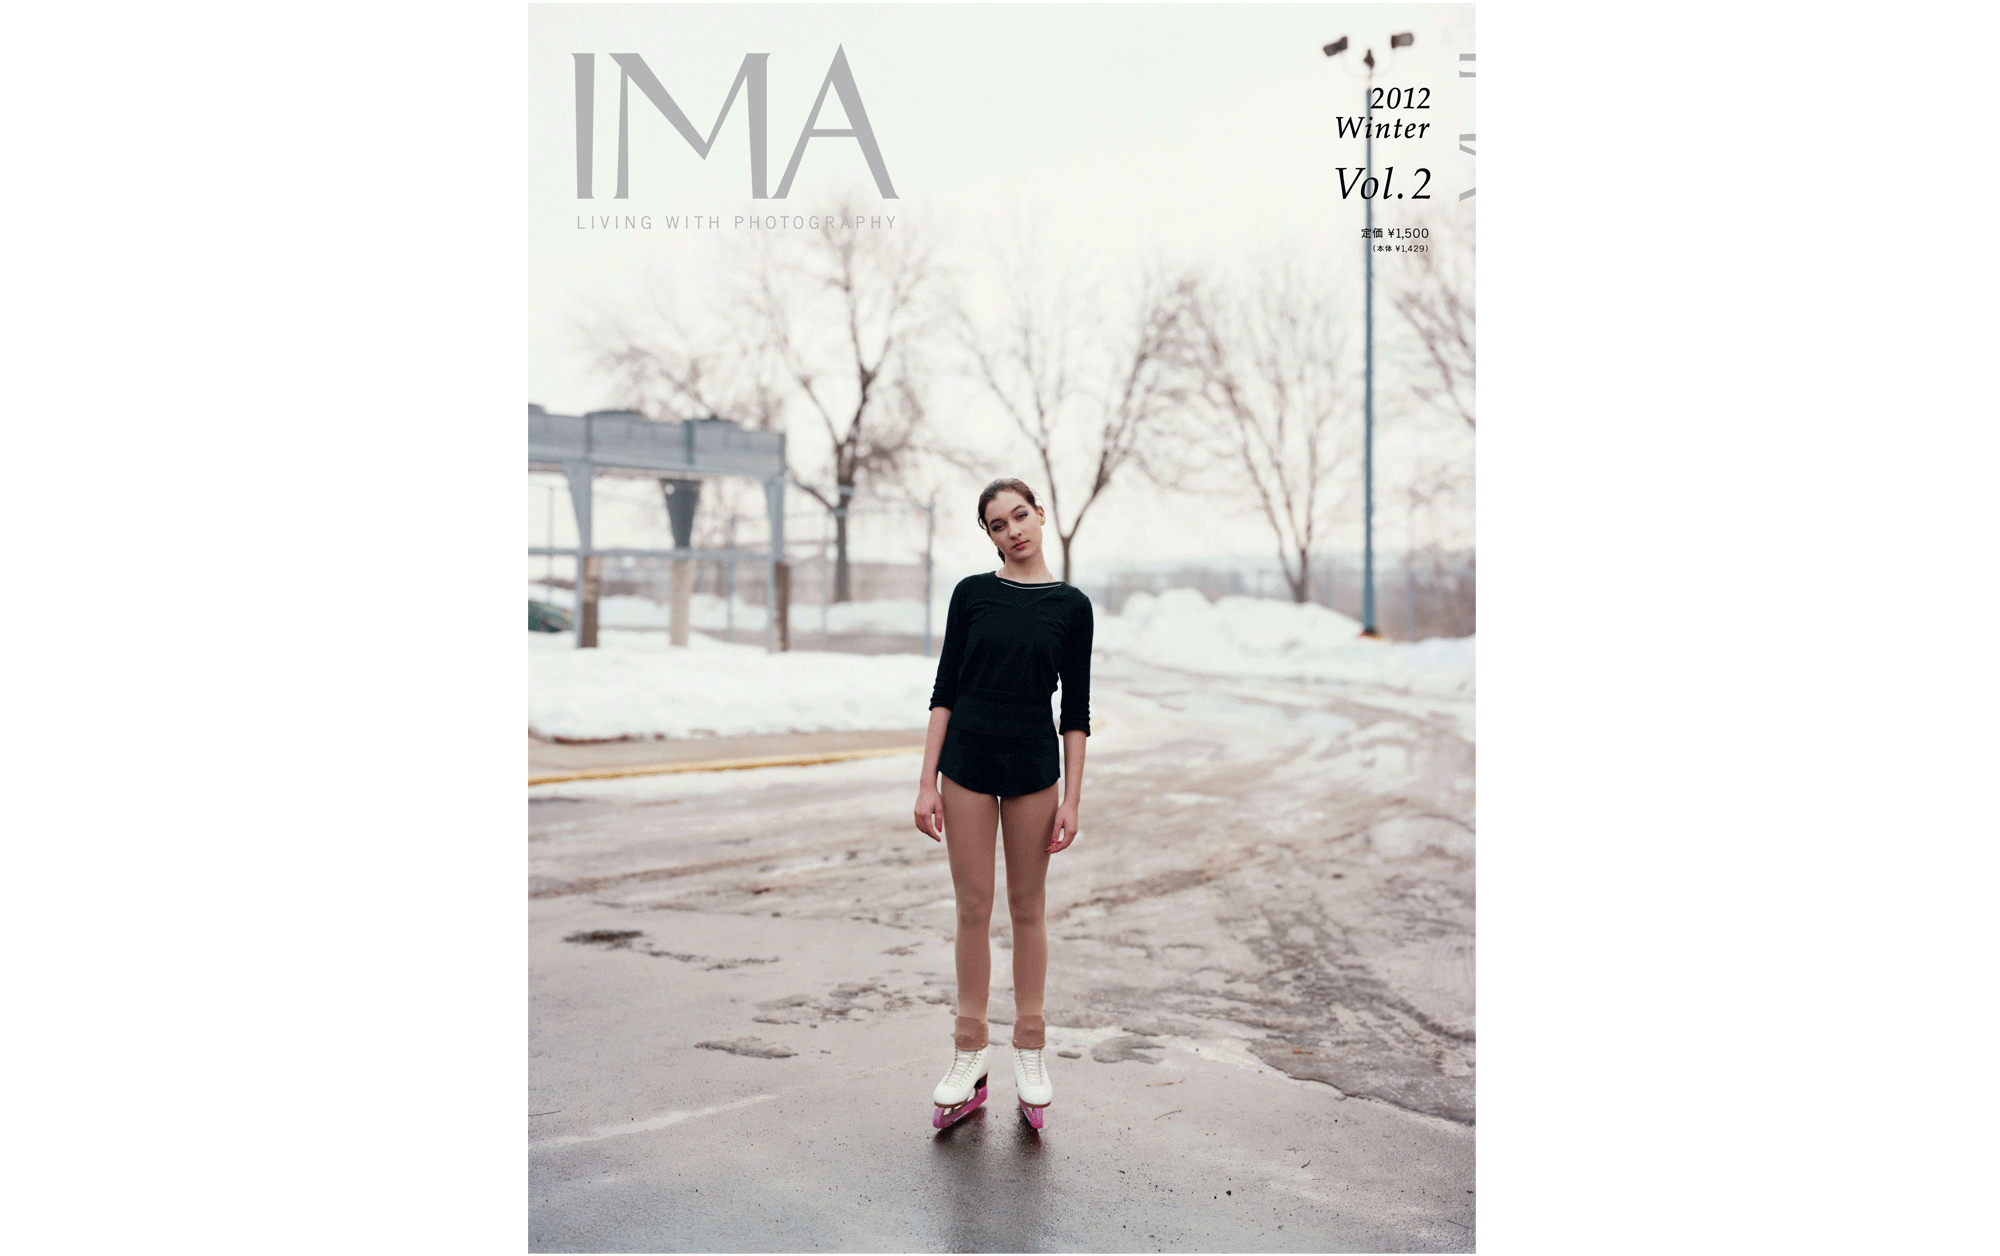 IMA 2012 Winter Vol.2